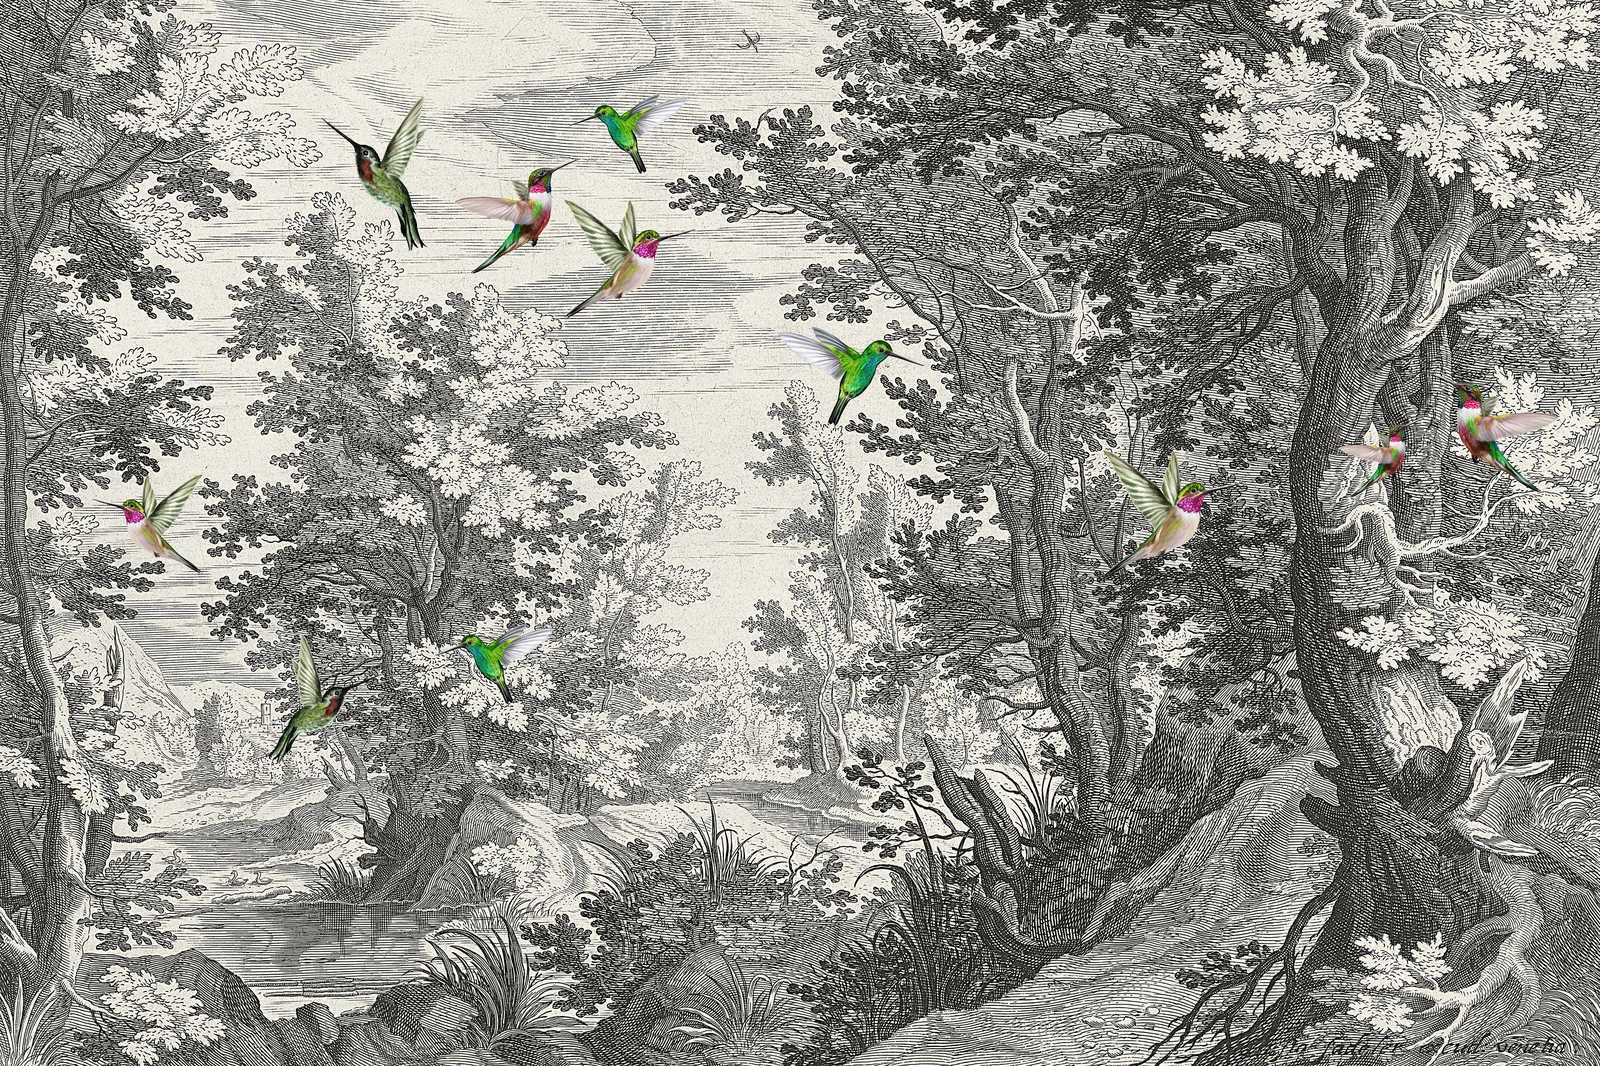             Fancy Forest 1 - Landschaft Leinwandbild Kunstdruck mit Vögeln – 1,20 m x 0,80 m
        